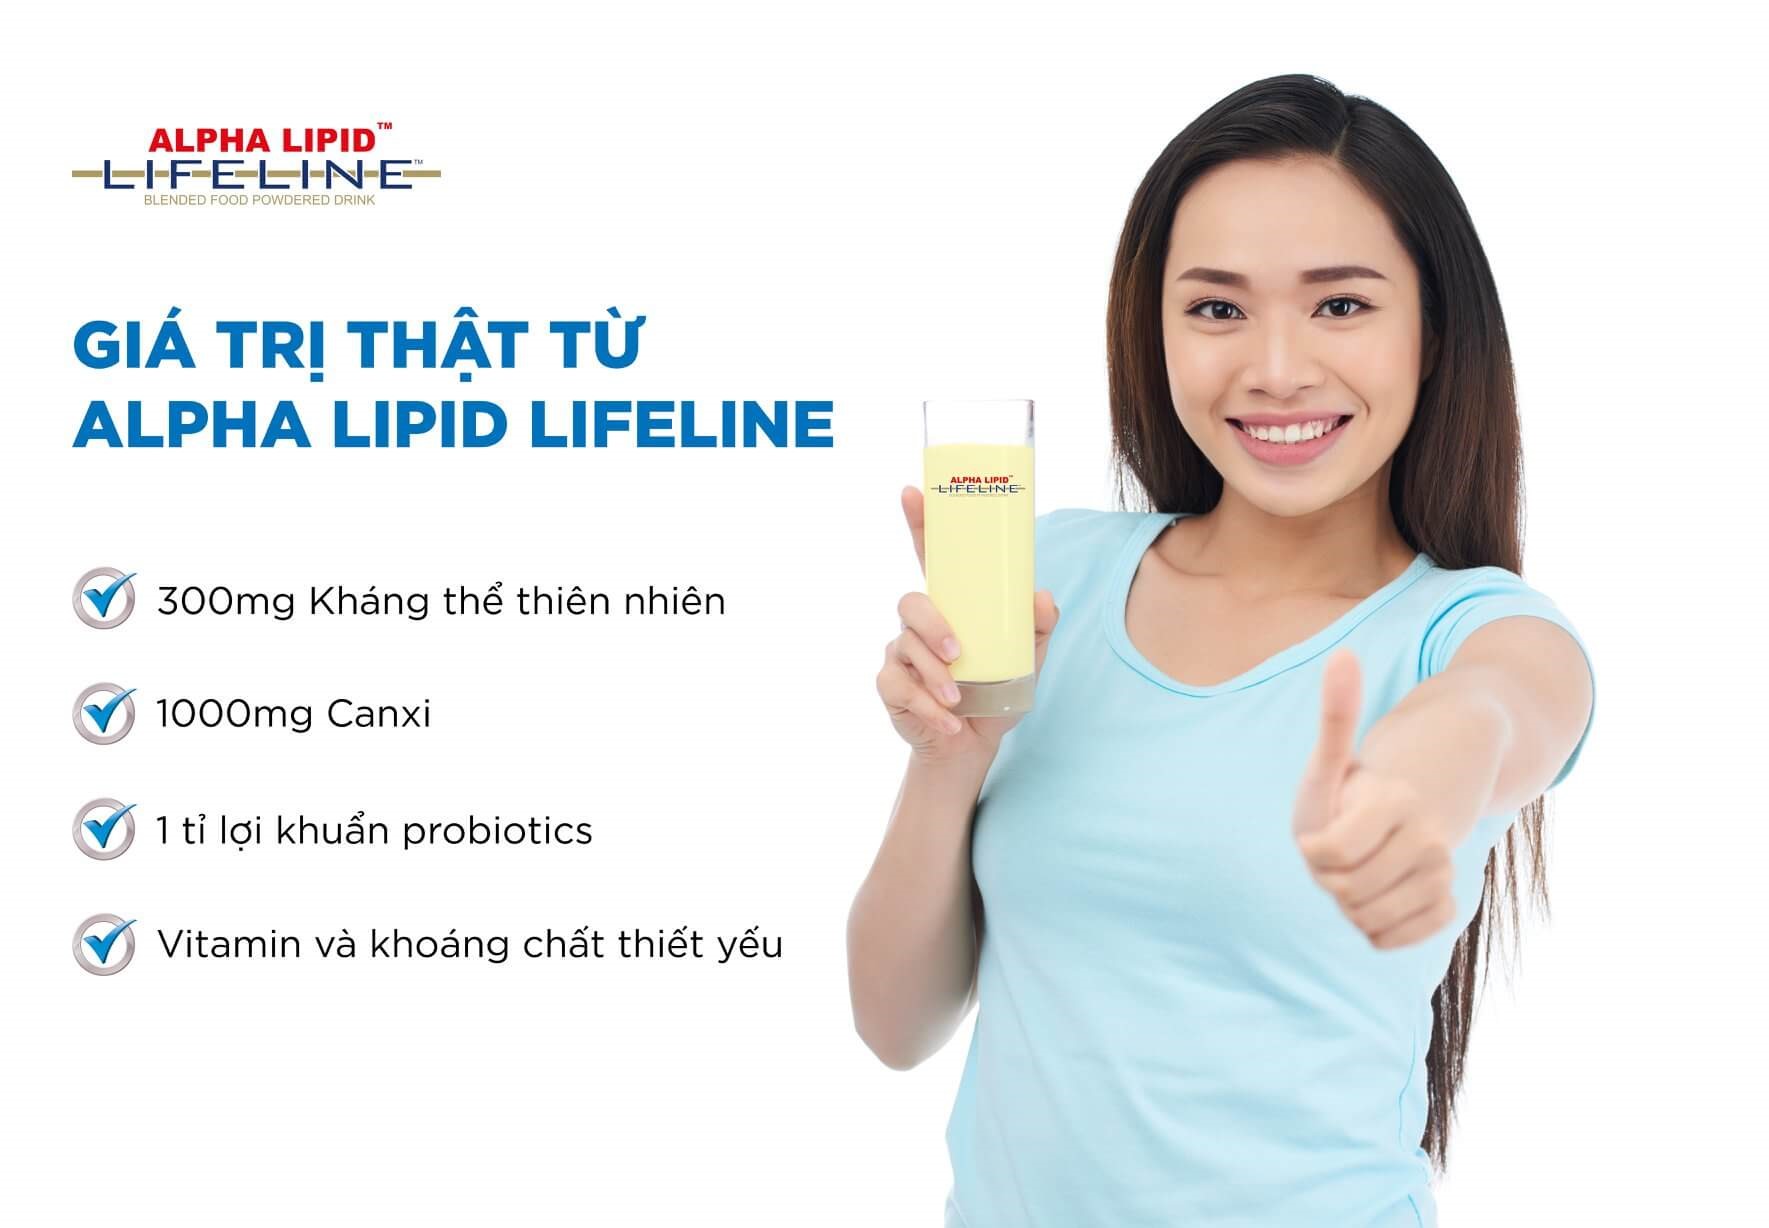 Nên mua sữa Alpha Lipid ở đâu uy tín?